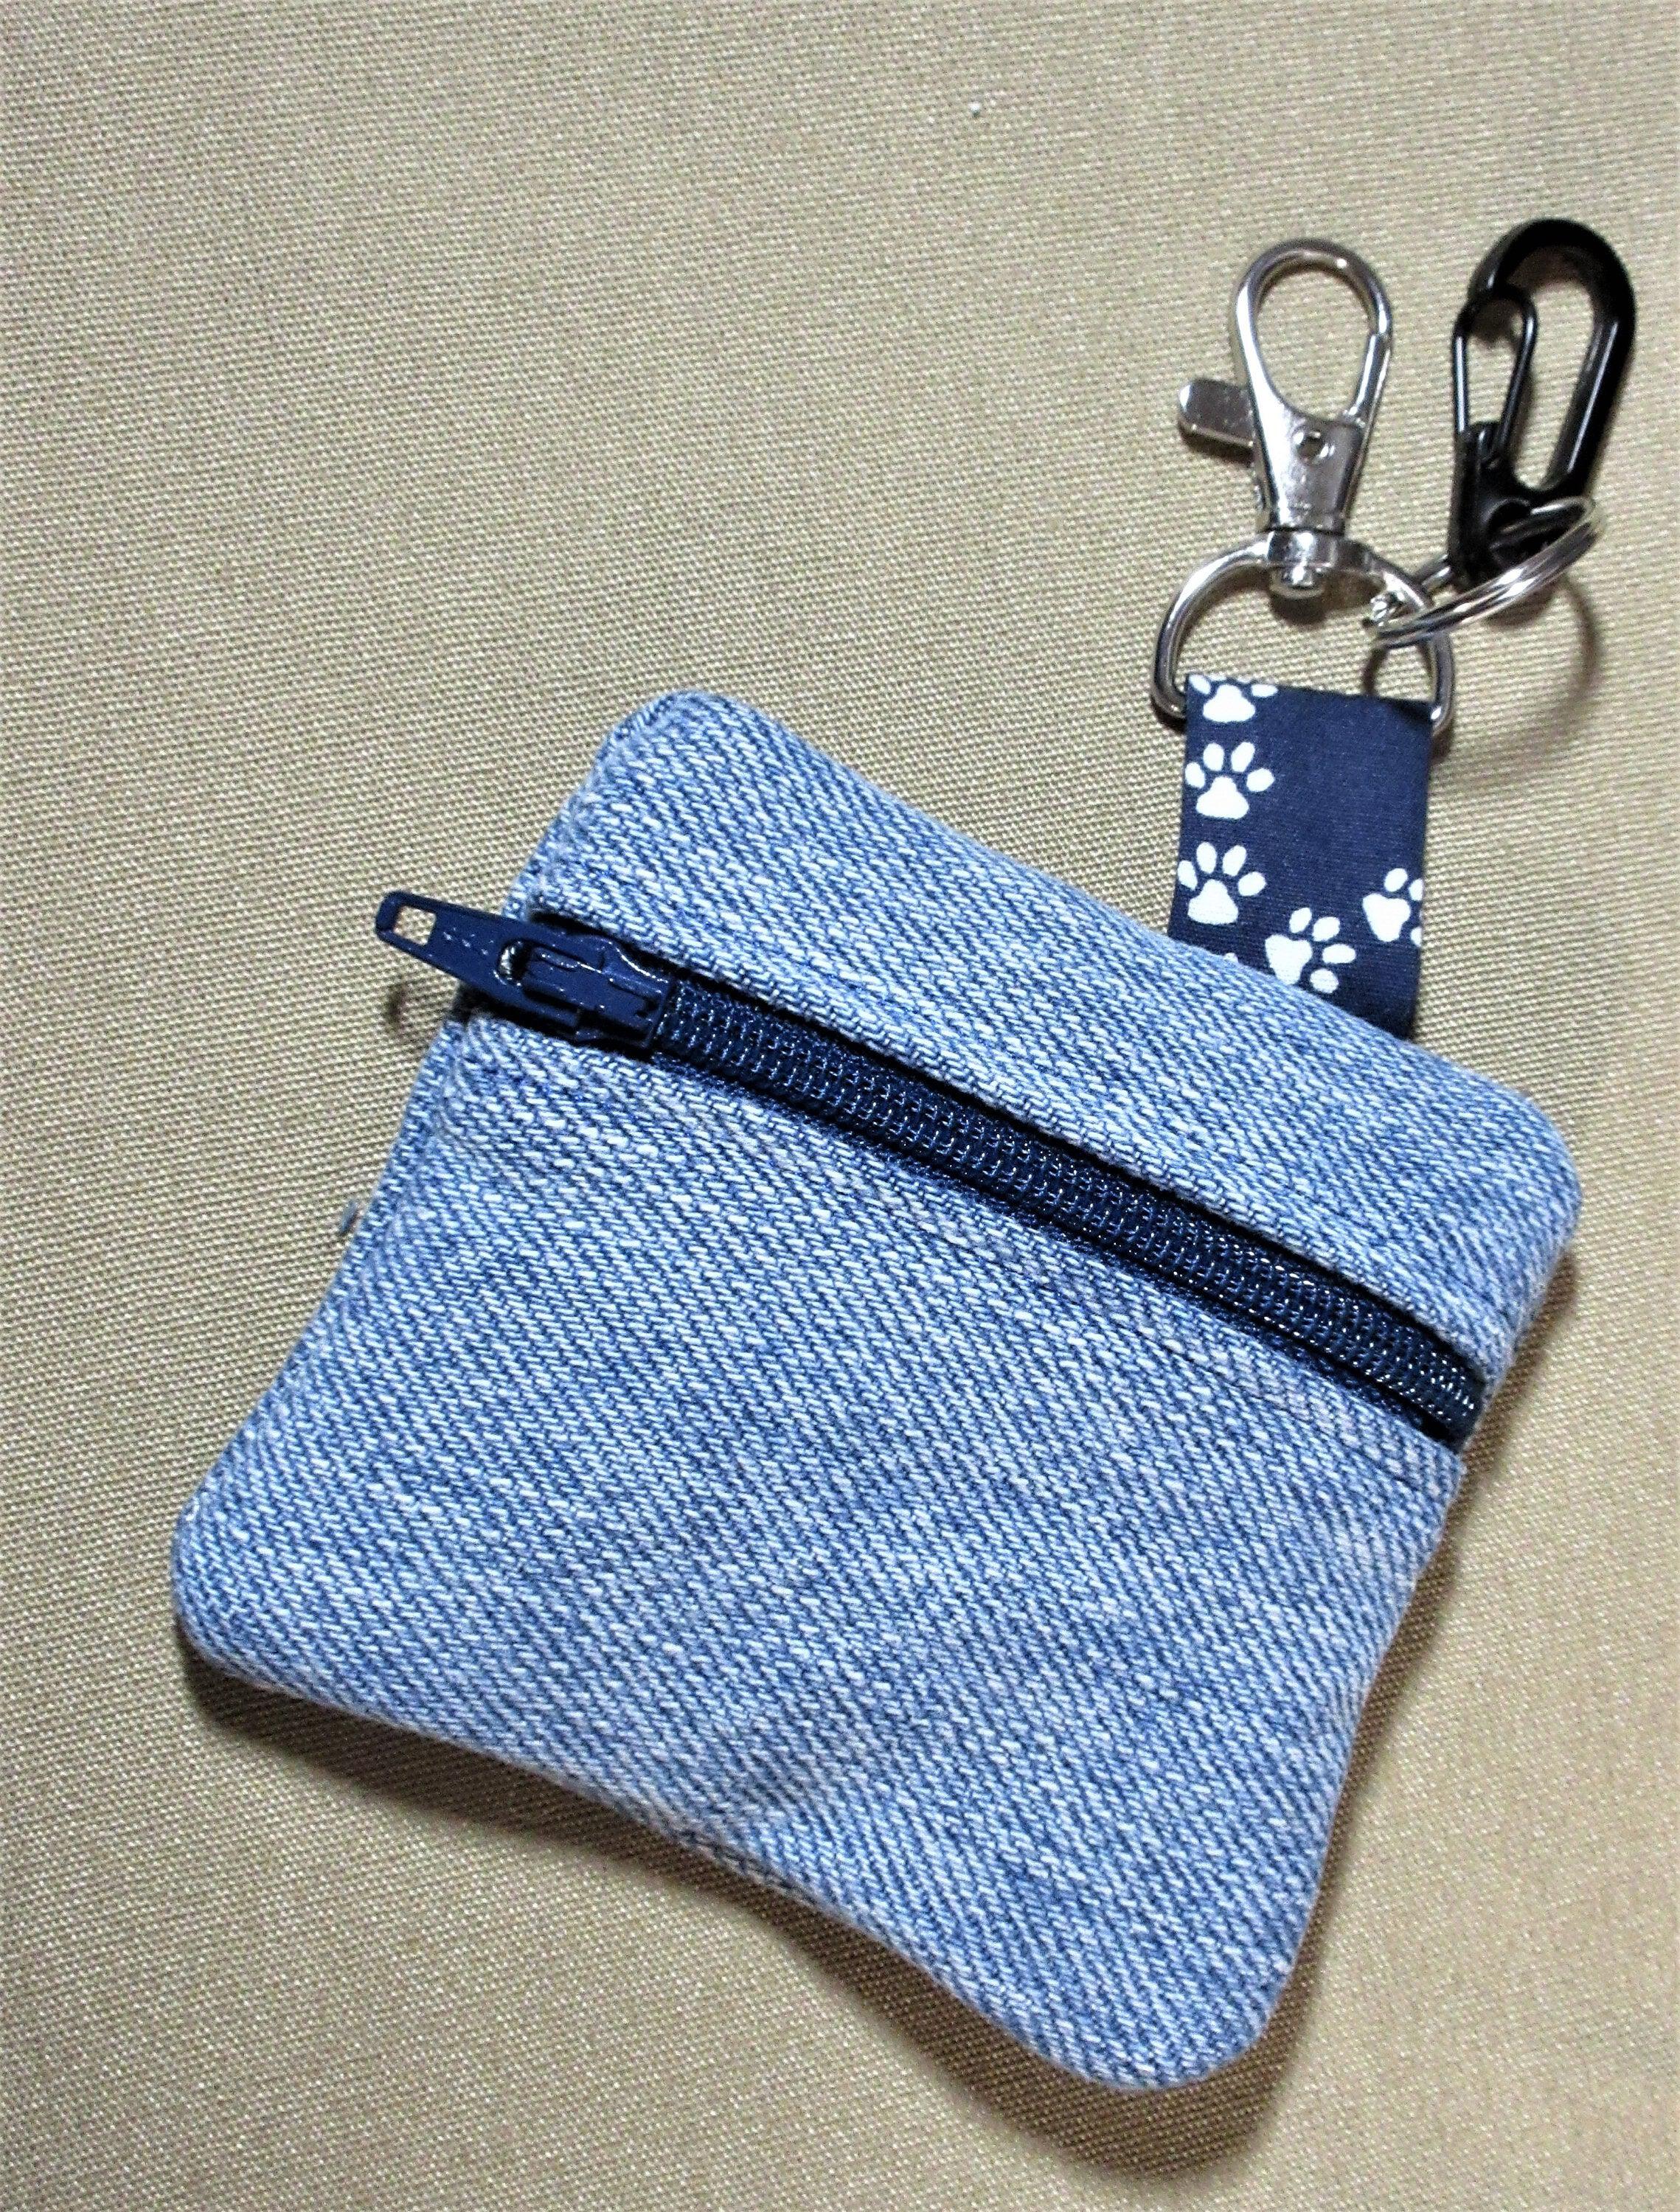 Denim dog poop bag holder or doody bag holder treat bag or pacifier holder handmade by A Fur Baby Favorite